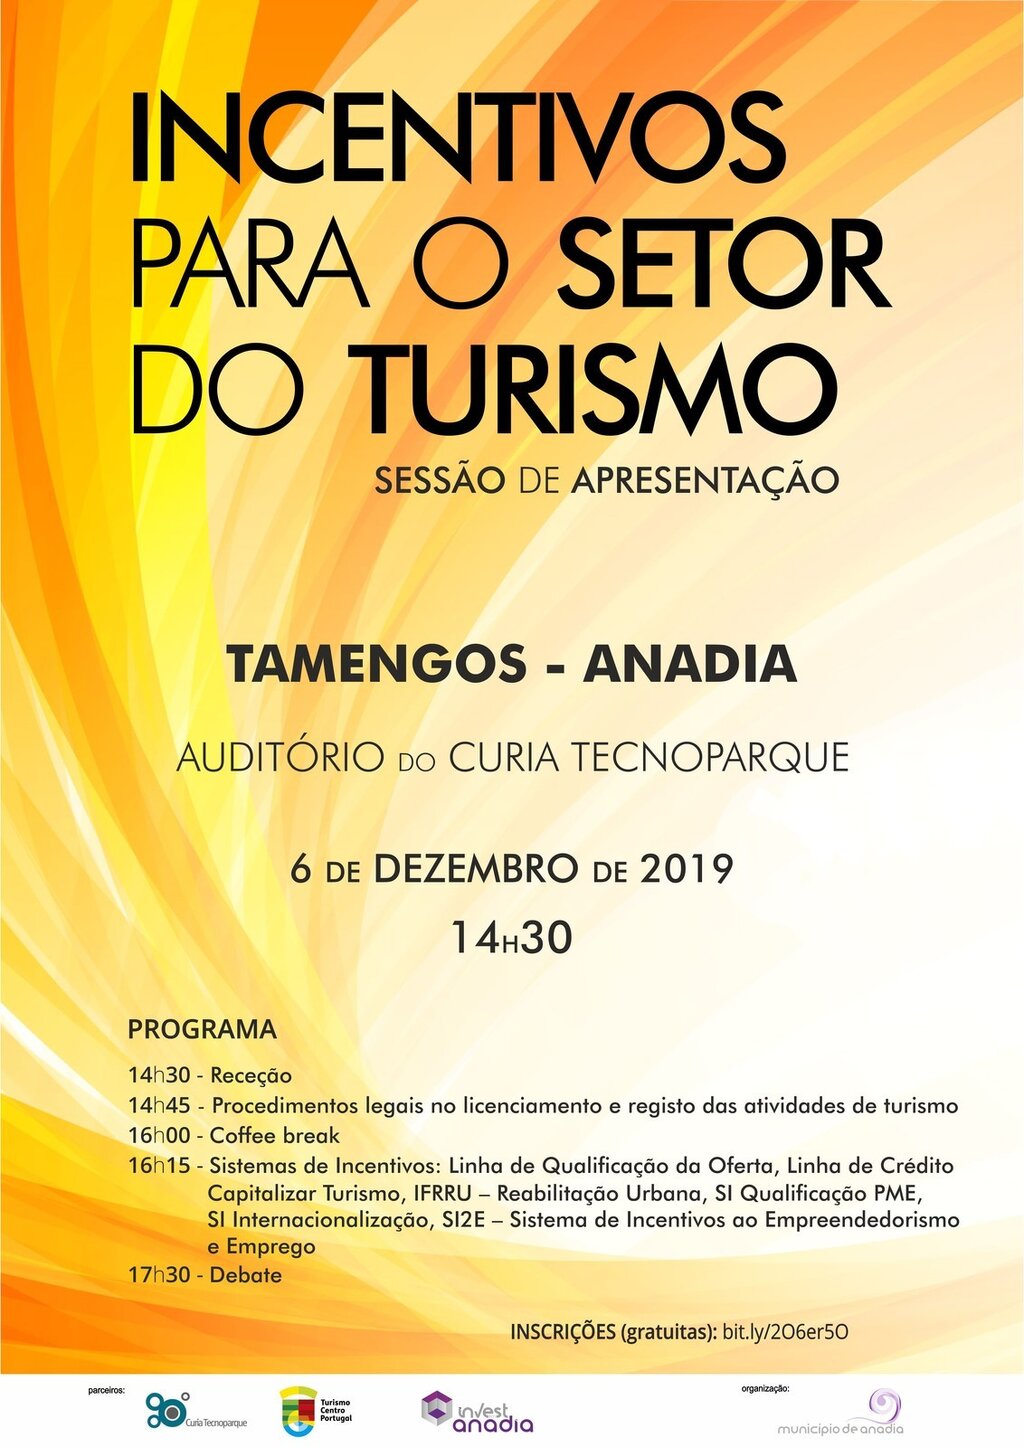 "Incentivos para o Setor de Turismo" - Sessão de Apresentação - 14h30